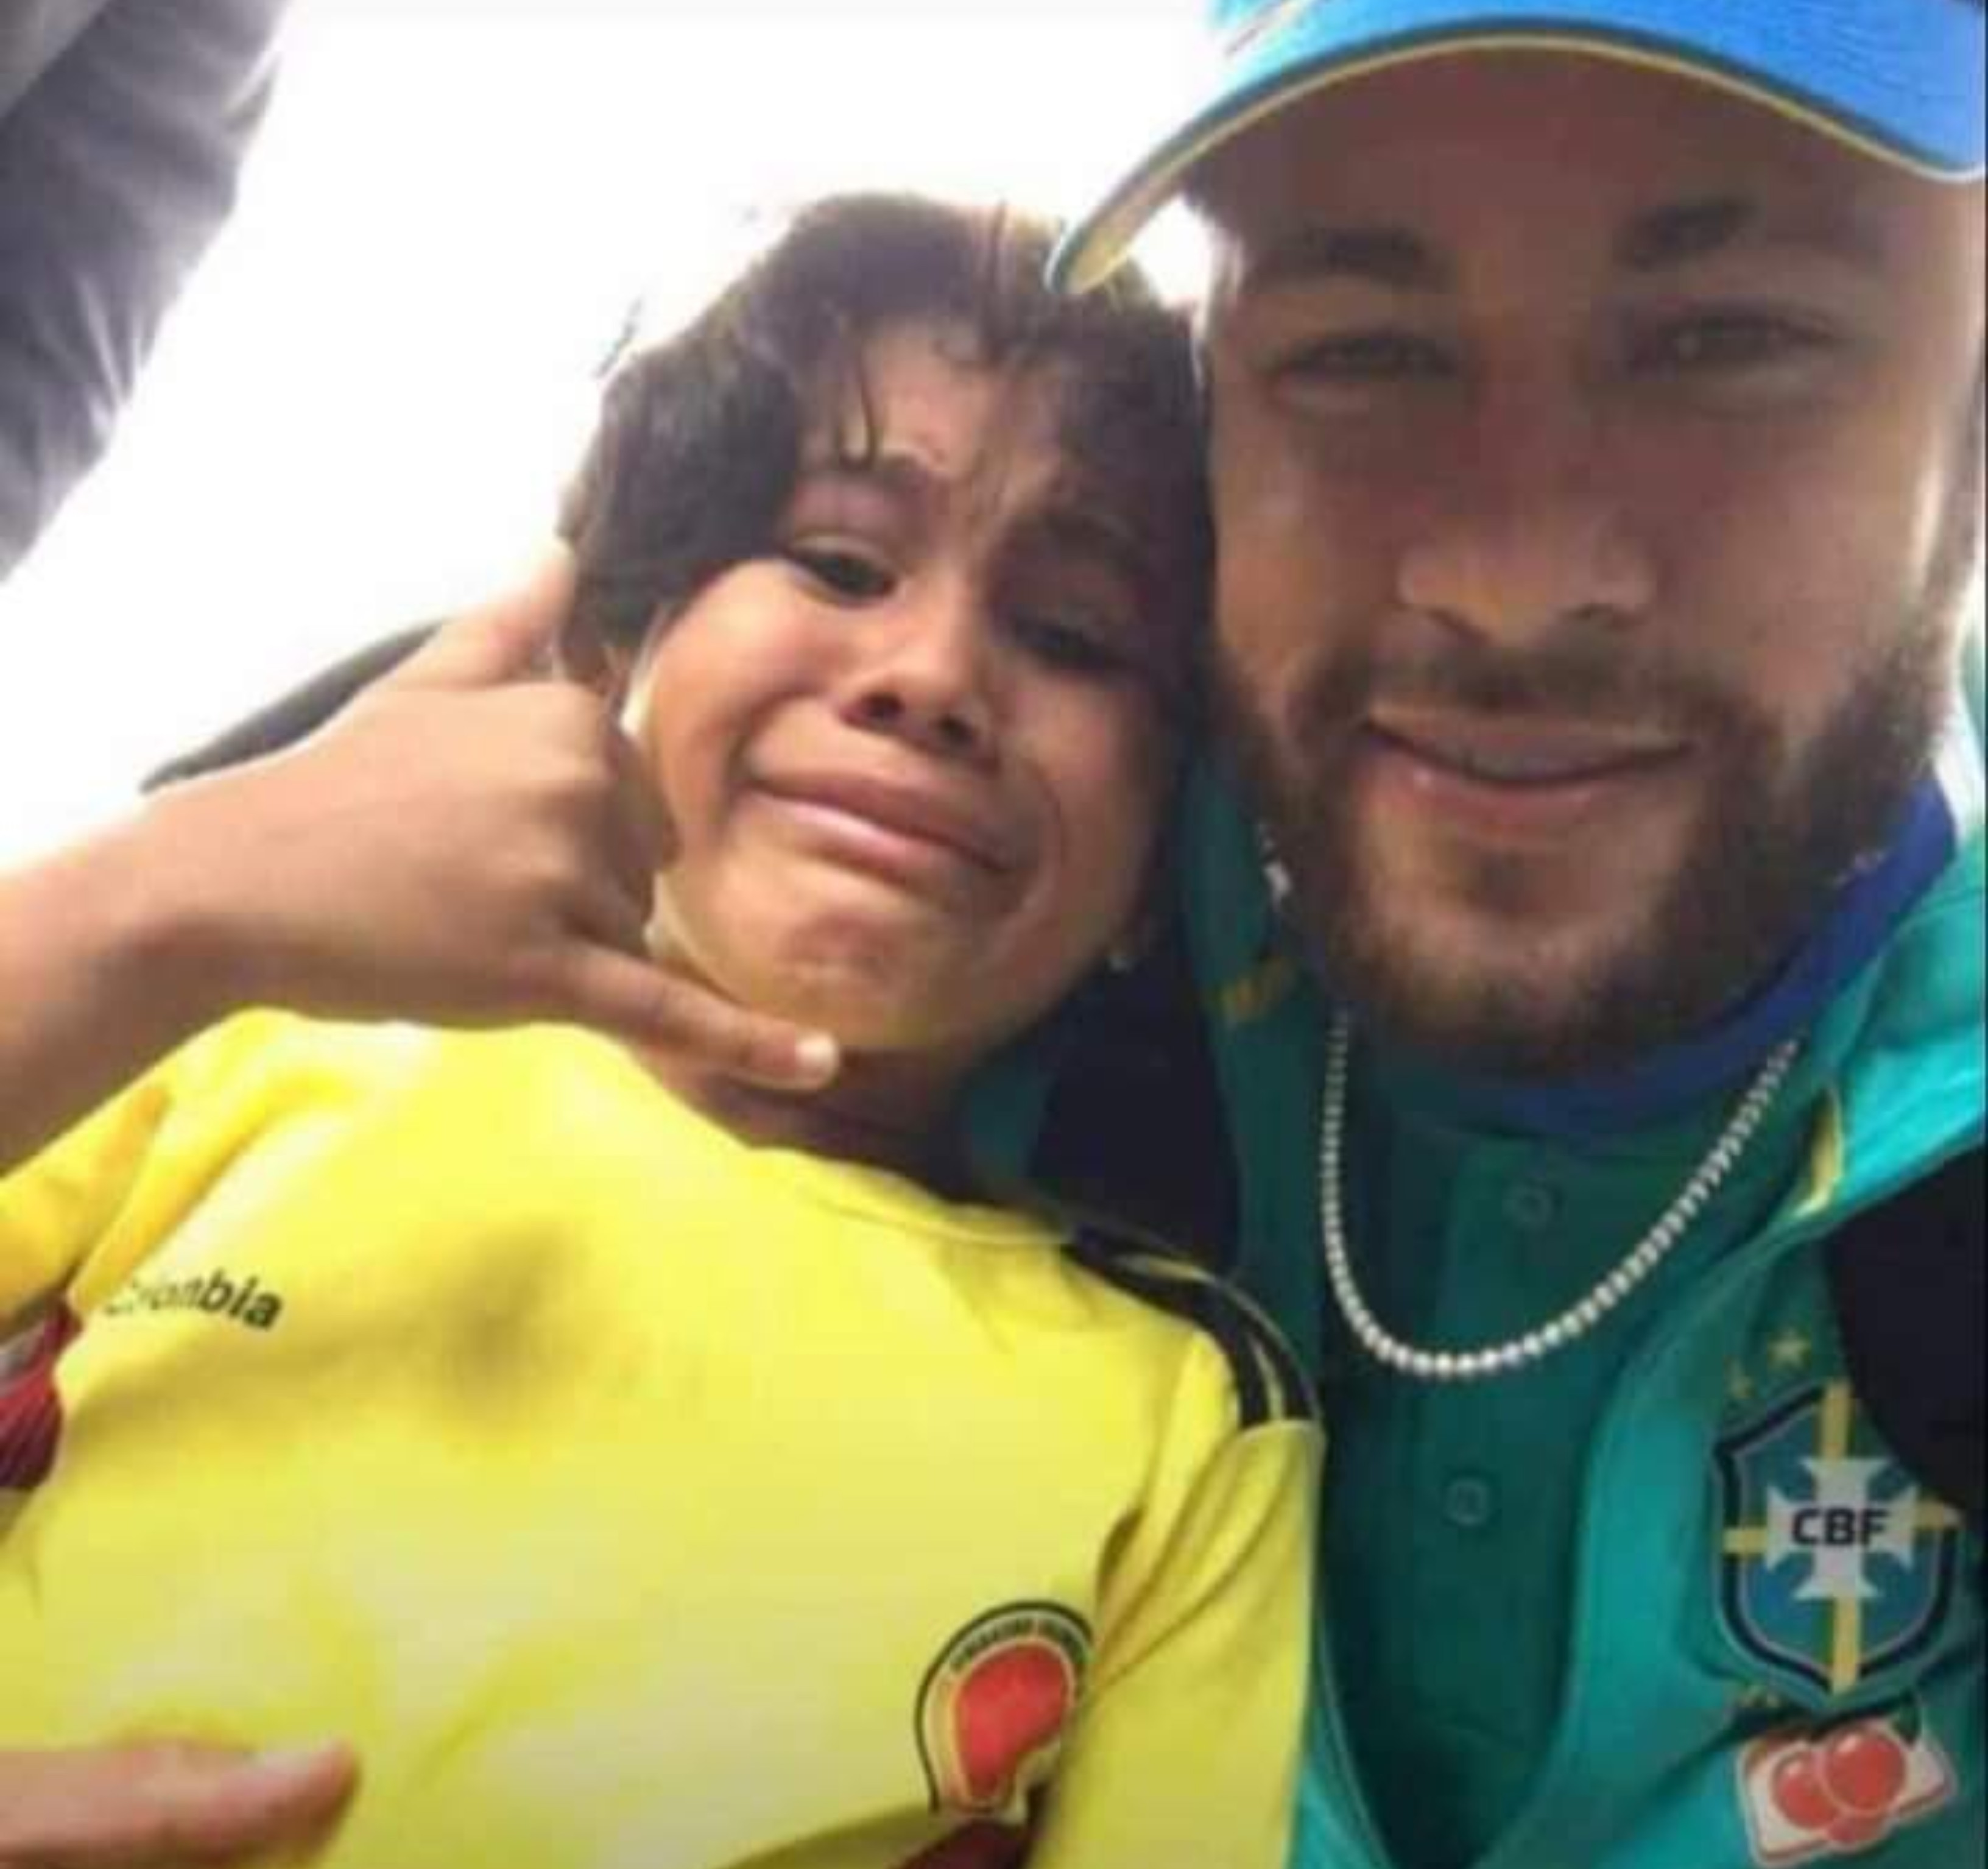 Neymar abrazó al niño y le dio un par de palmaditas, mientras los espectadores apreciaban el enternecedor momento. Así mismo se retiró la mascarilla para tomarse esta foto. Foto redes sociales.